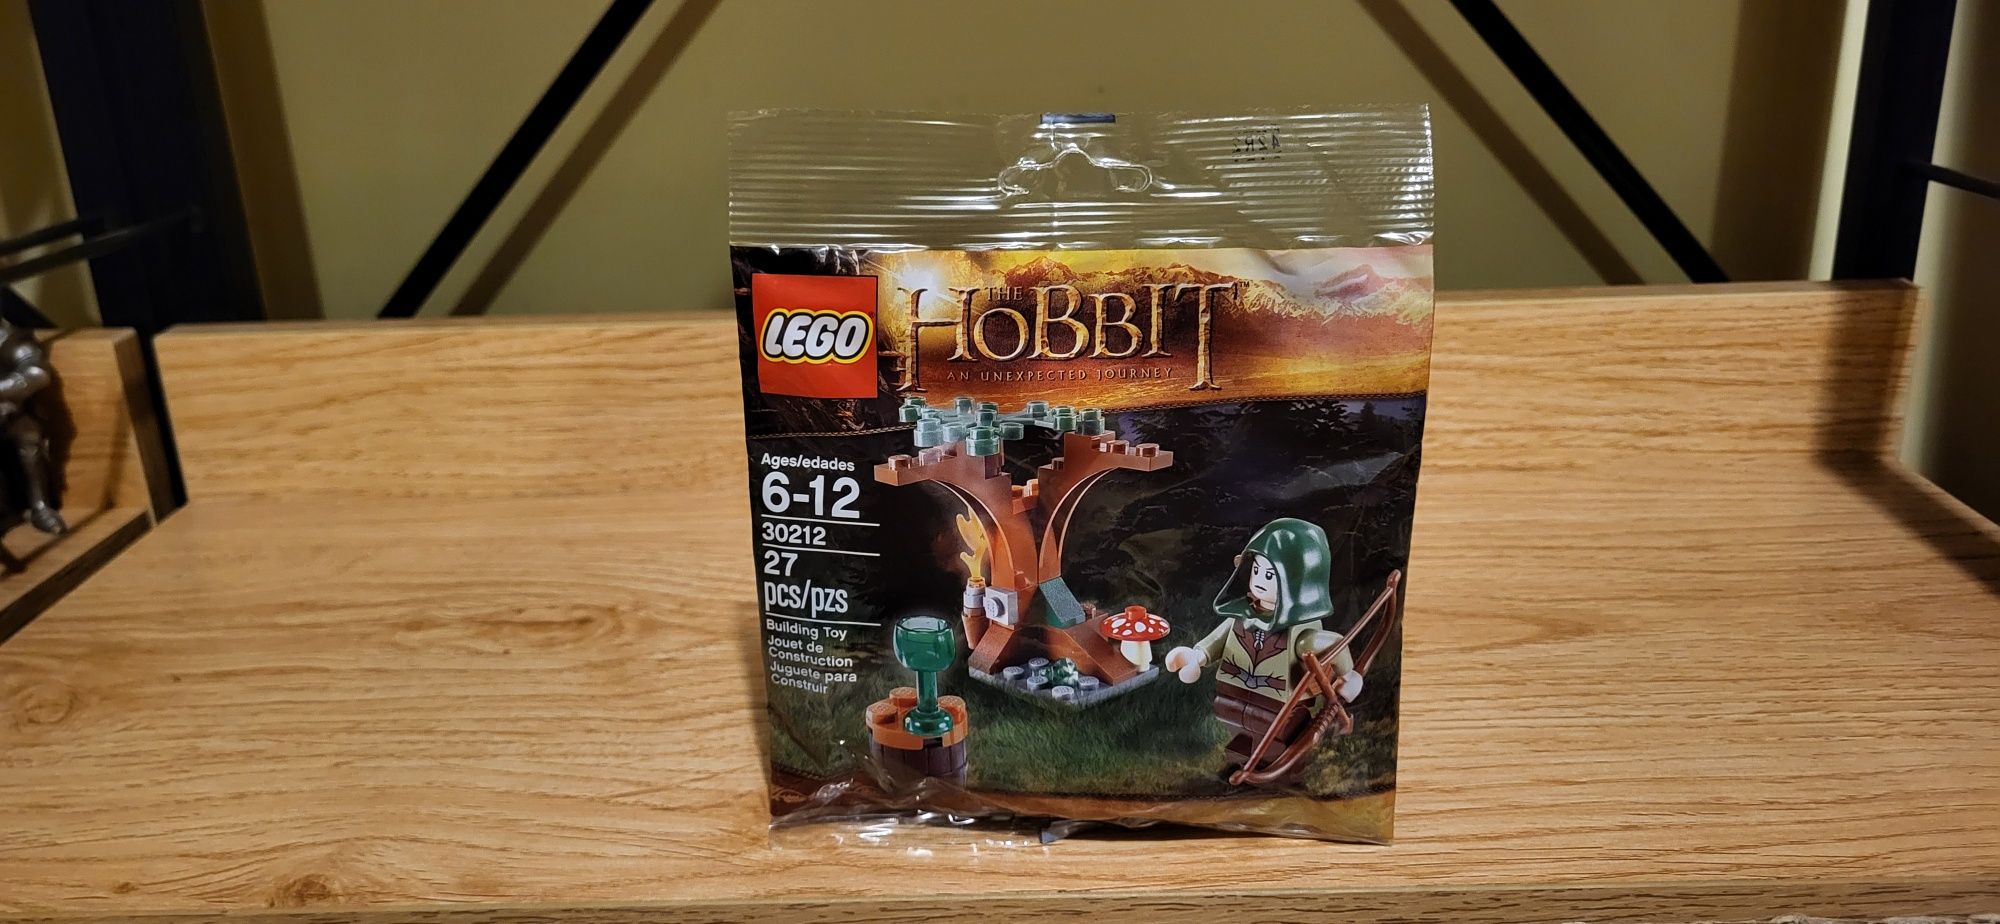 Lego Hobbit 30212 Mirkwood leśny elf łucznik saszetka klocki